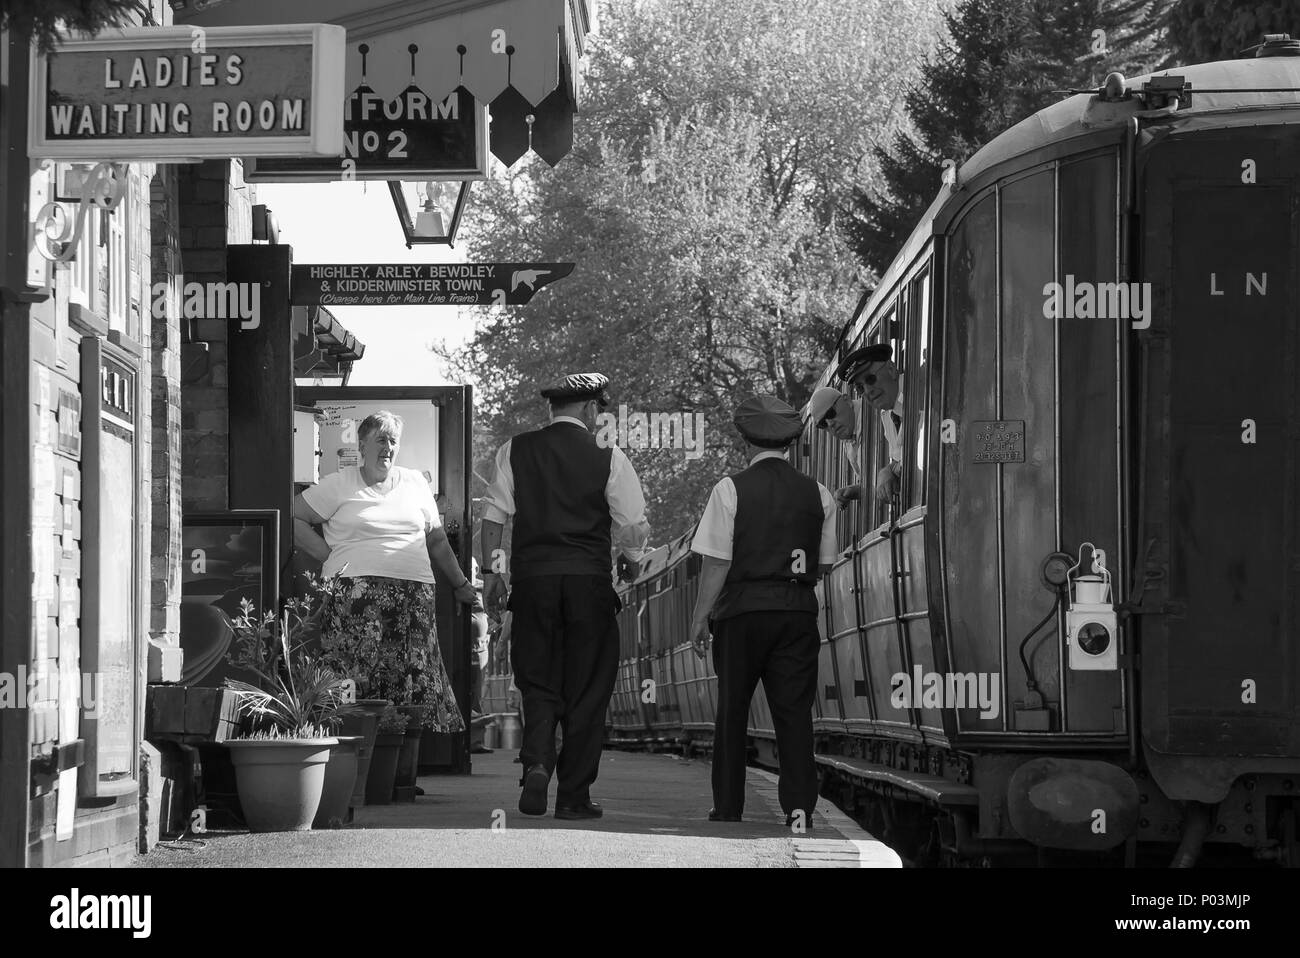 Nostalgie en noir et blanc à la gare de Hampton Loade, Severn Valley Heritage Railway, Royaume-Uni. Une femme de thé salue le maître de la gare, le contremaître et la garde en train ! Banque D'Images